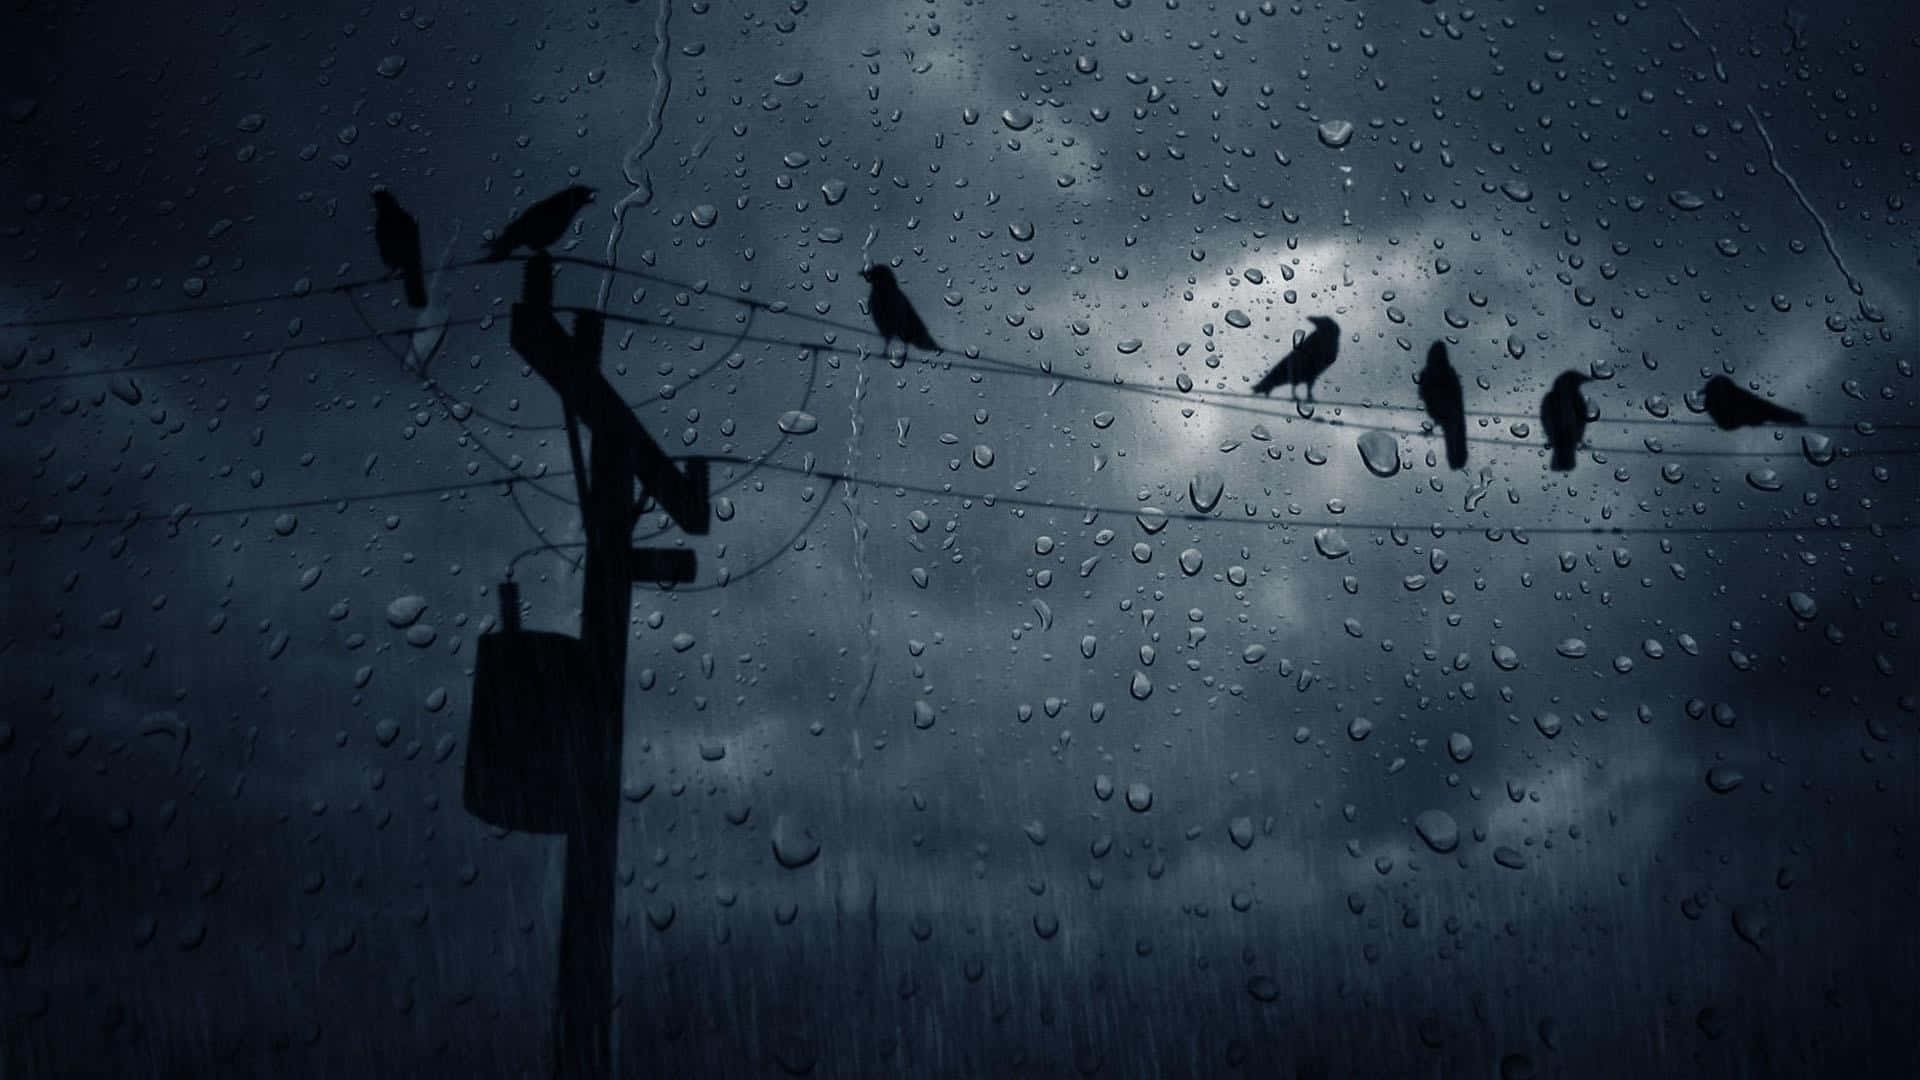 Birds On A Telephone Pole In The Rain